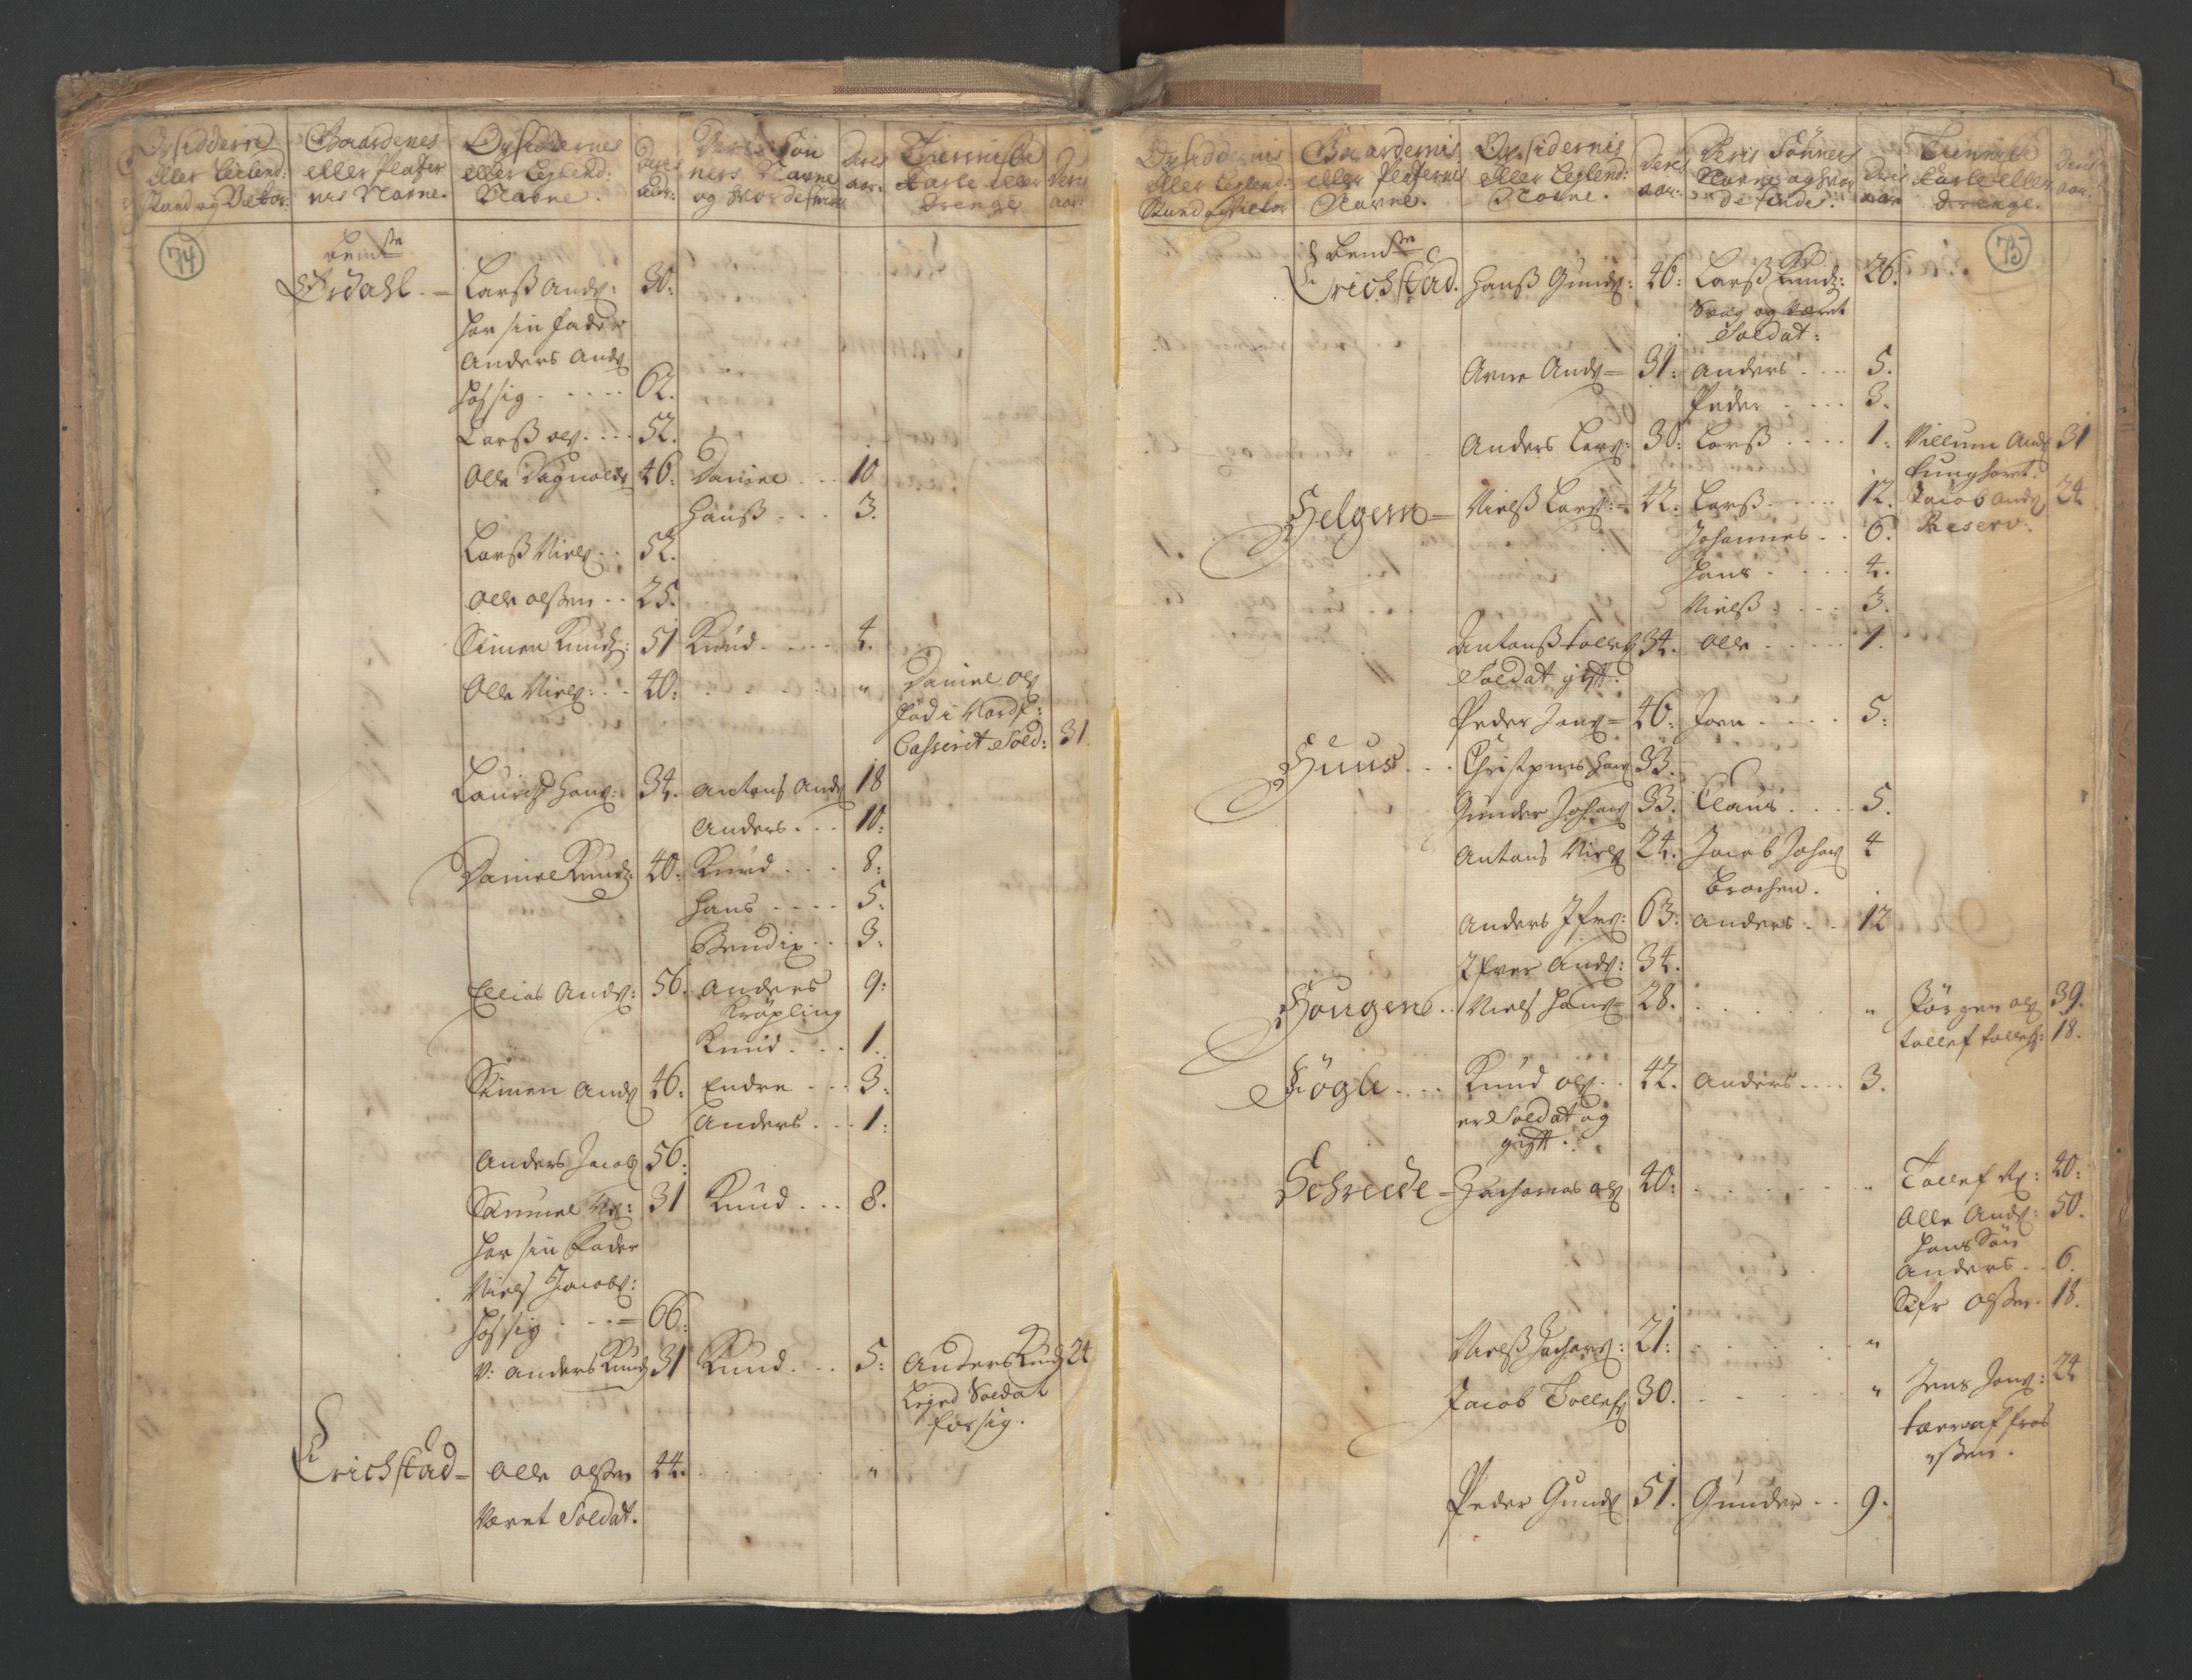 RA, Census (manntall) 1701, no. 9: Sunnfjord fogderi, Nordfjord fogderi and Svanø birk, 1701, p. 74-75